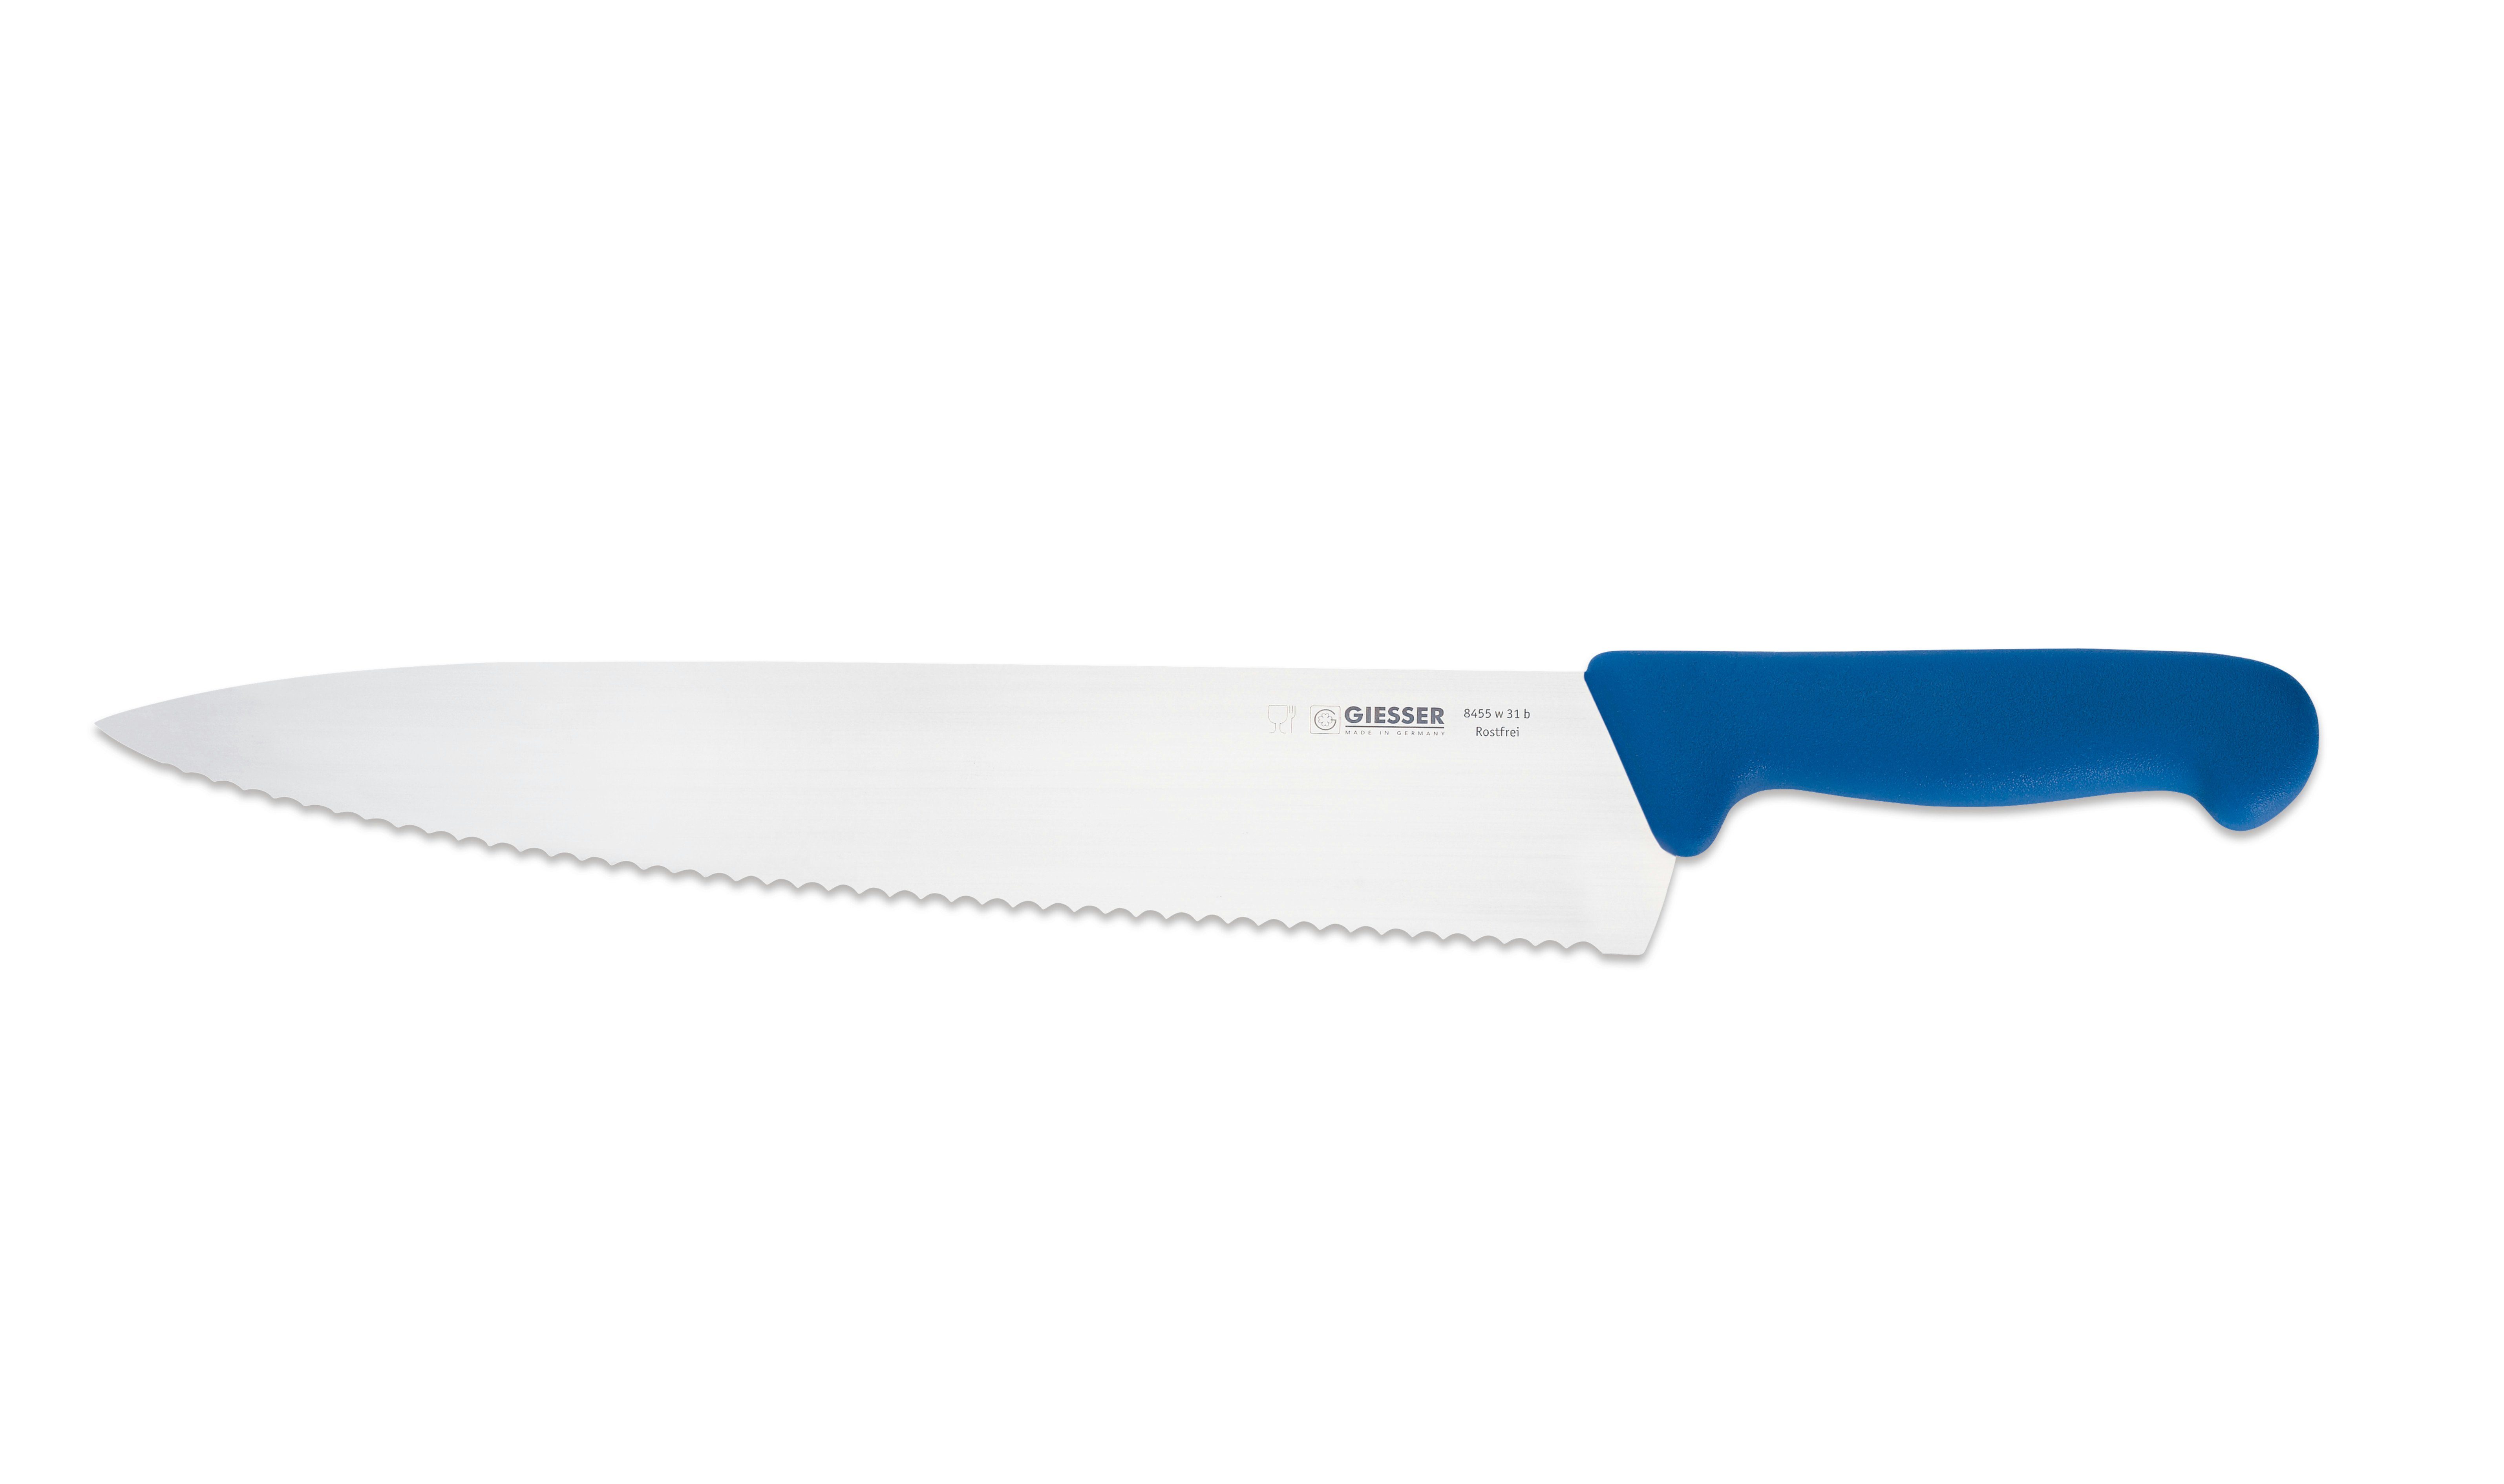 Giesser Messer Kochmesser Küchenmesser breit 8455, Rostfrei, breite Form, scharf, Handabzug, Ideal für jede Küche blau-Welle